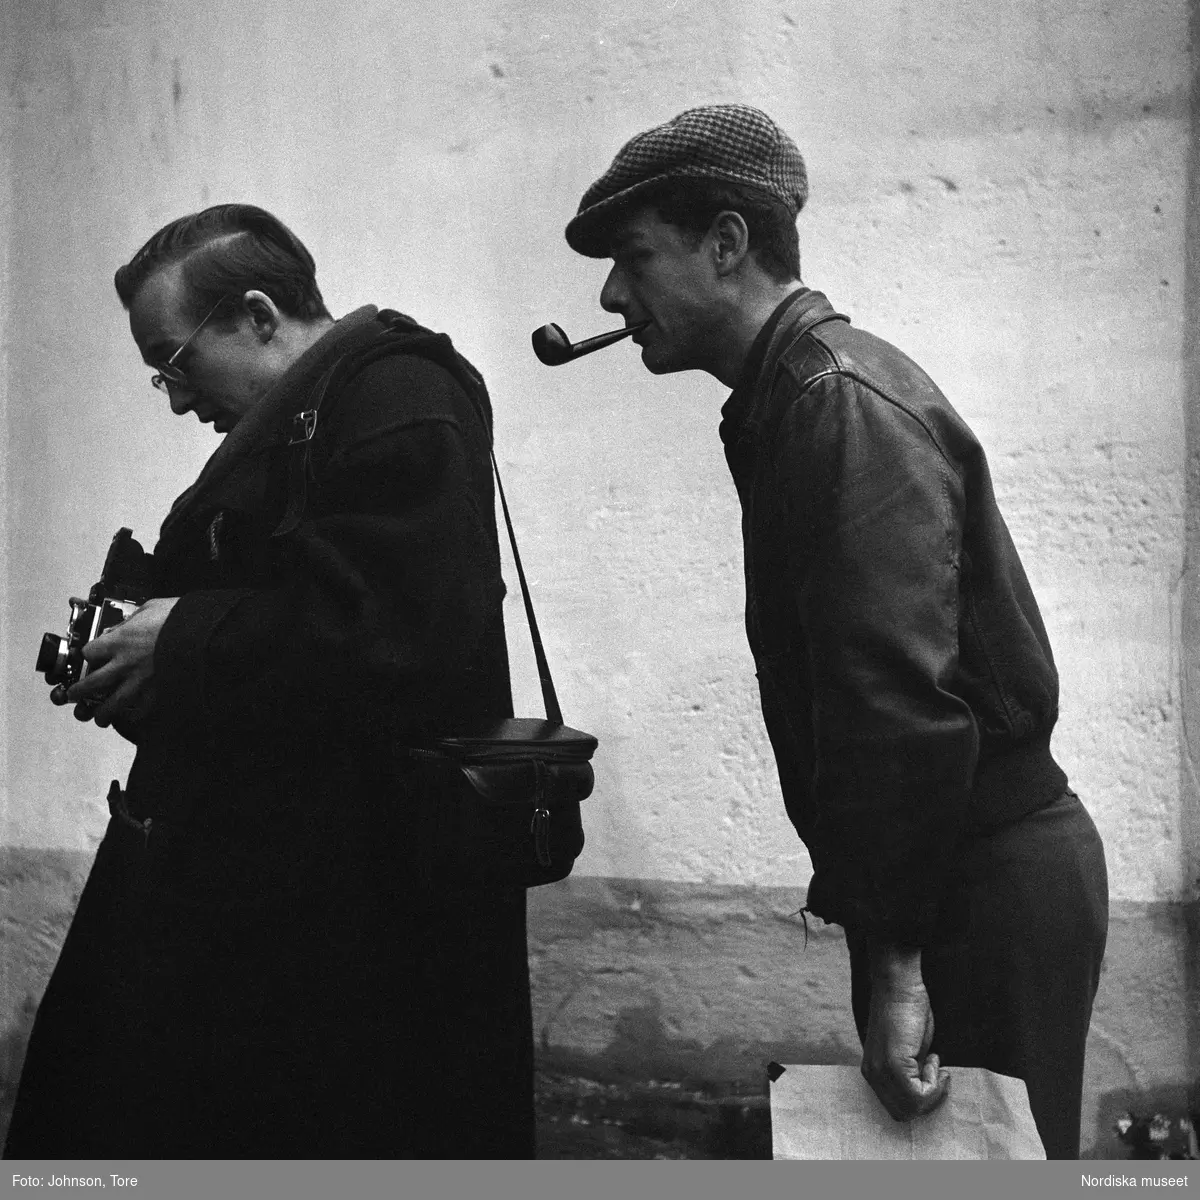 Paris. Fotografen Rune Hassner tittar på sin kamera, iakttagen av ytterligare en man i keps som röker pipa.